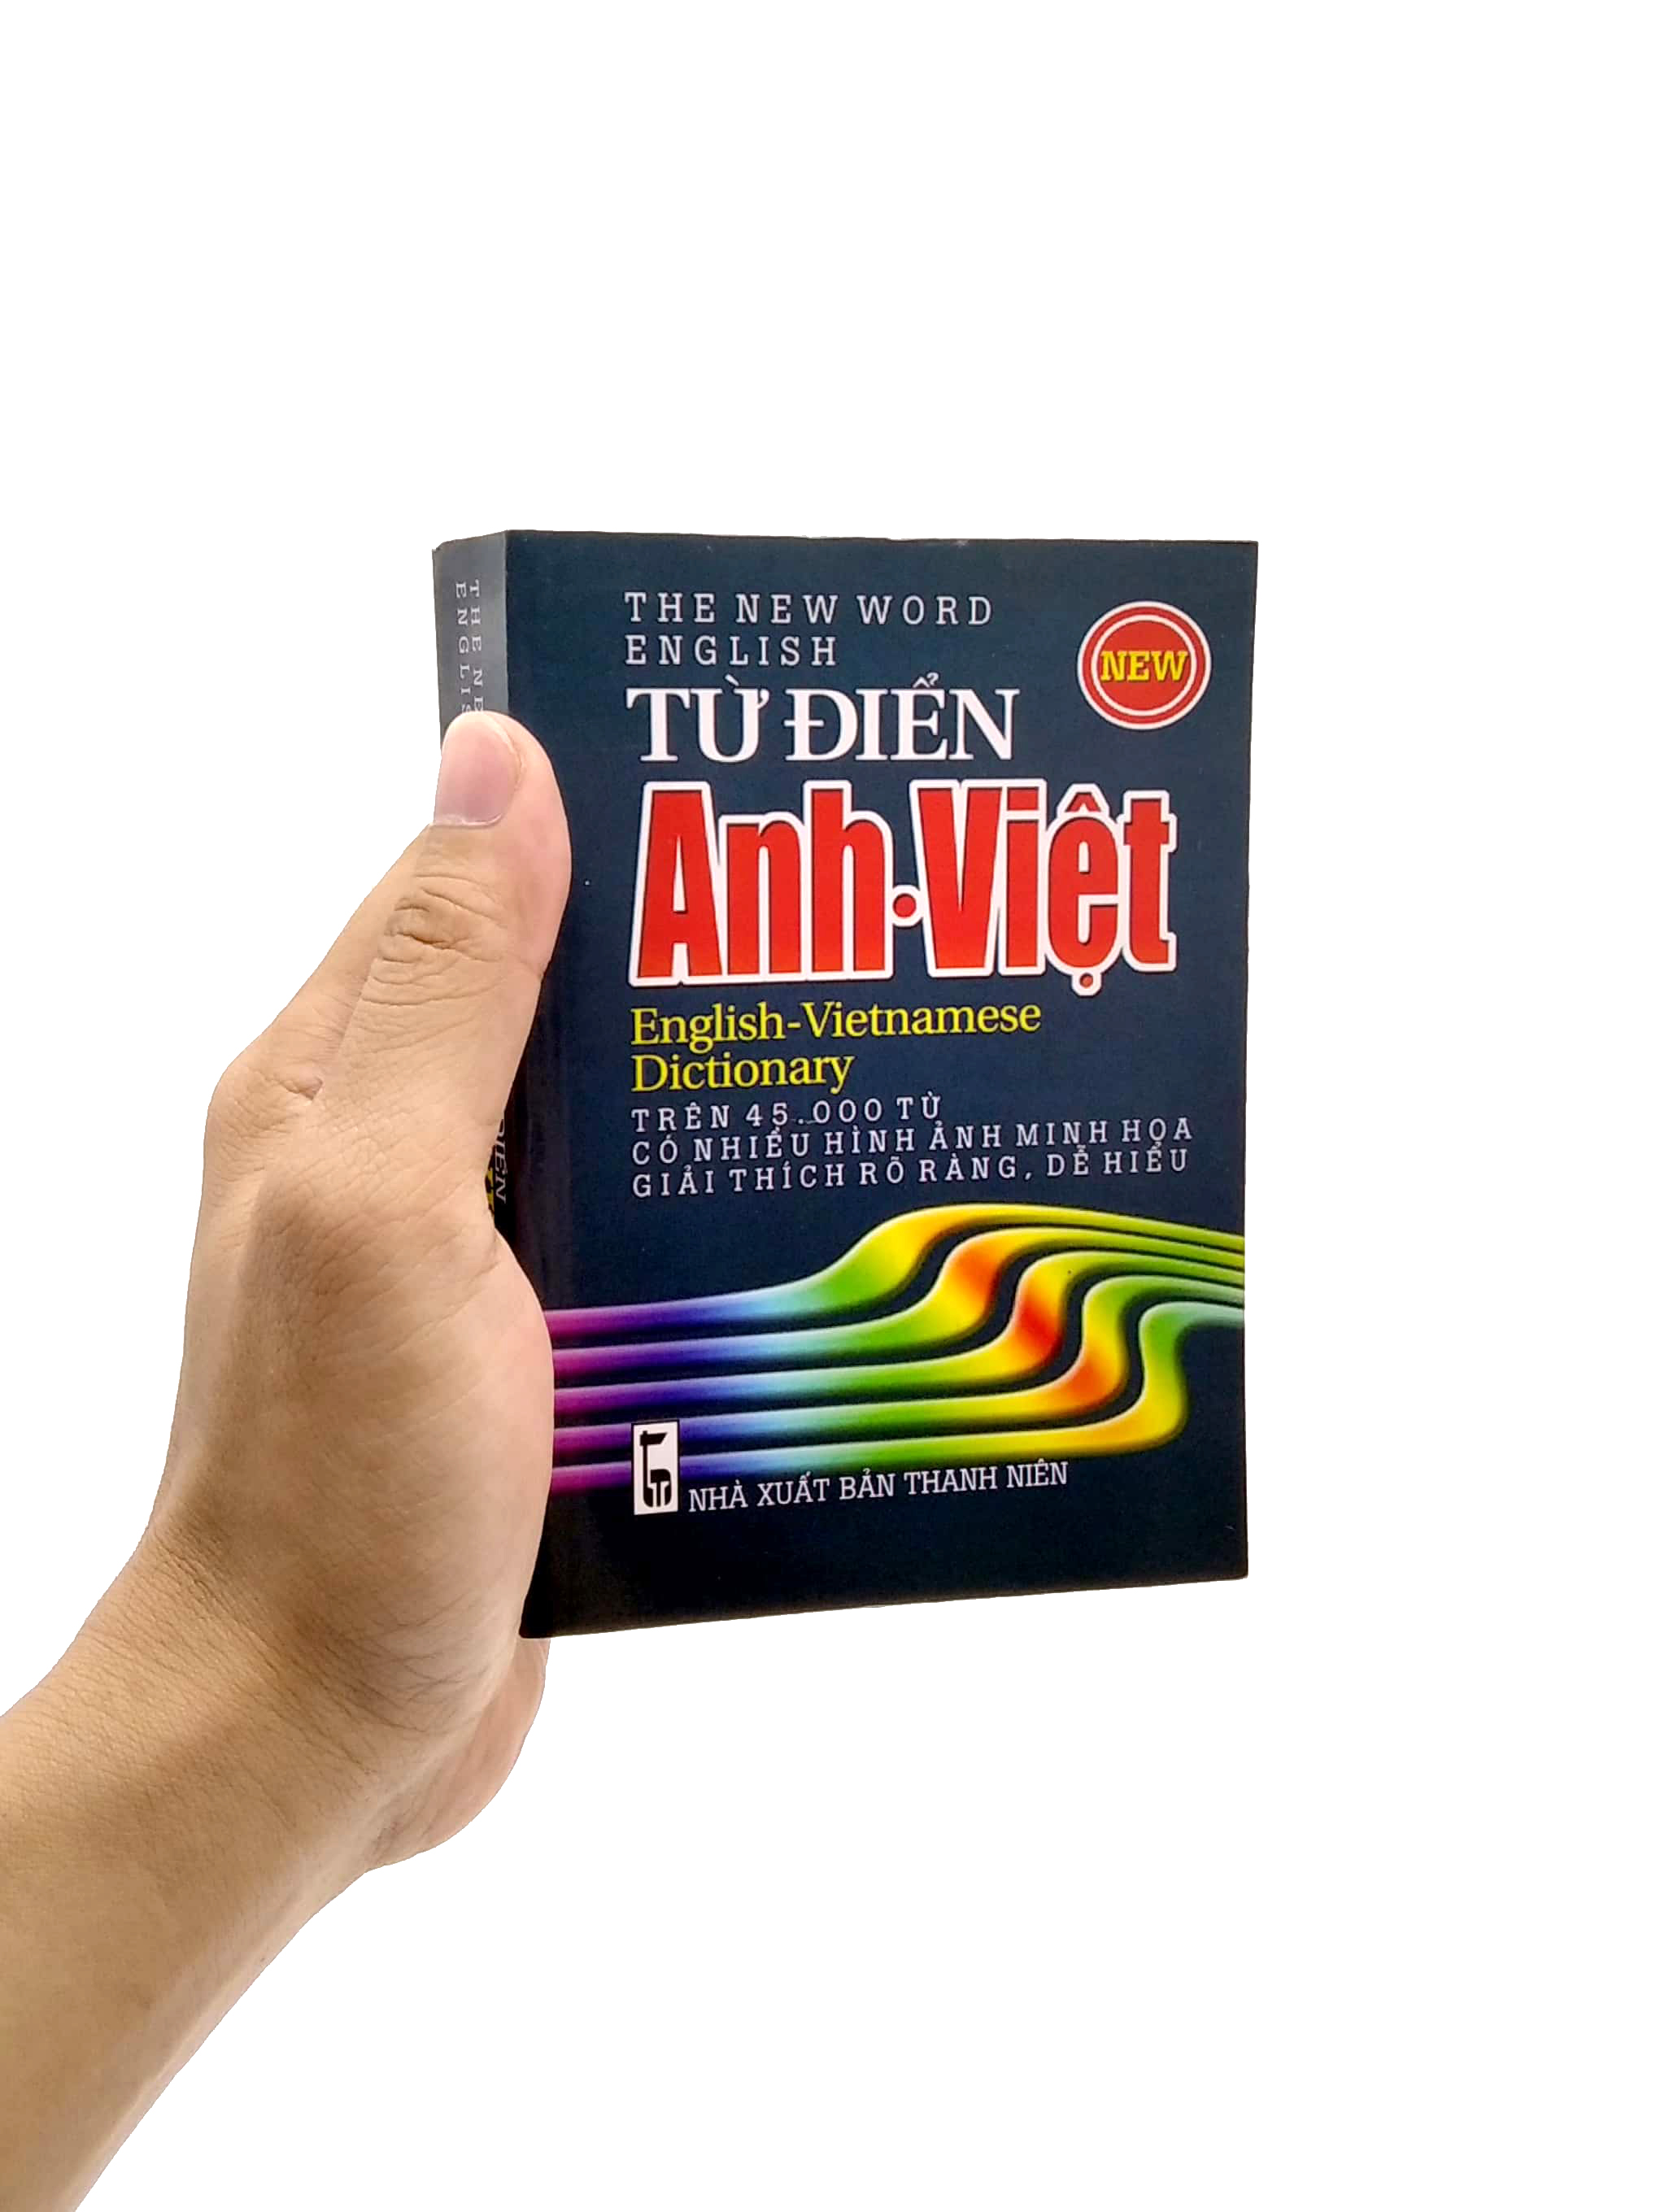 Từ Điển Anh - Việt 45.000 Từ PDF